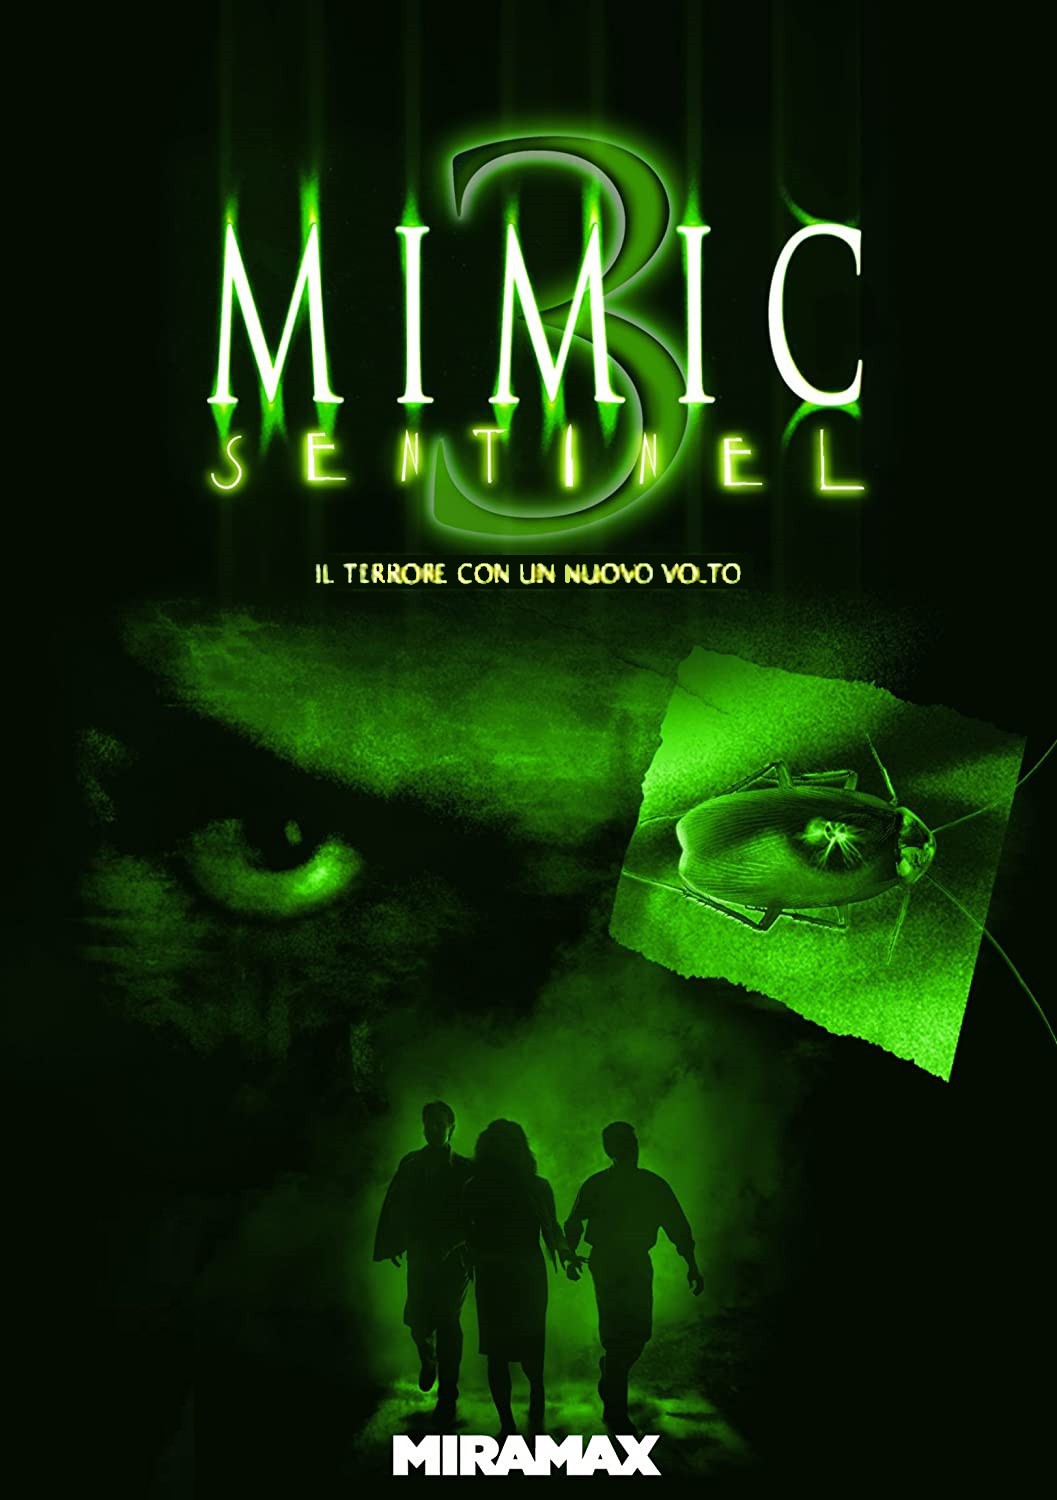 Mimic 3 – Sentinel [HD] (2003)